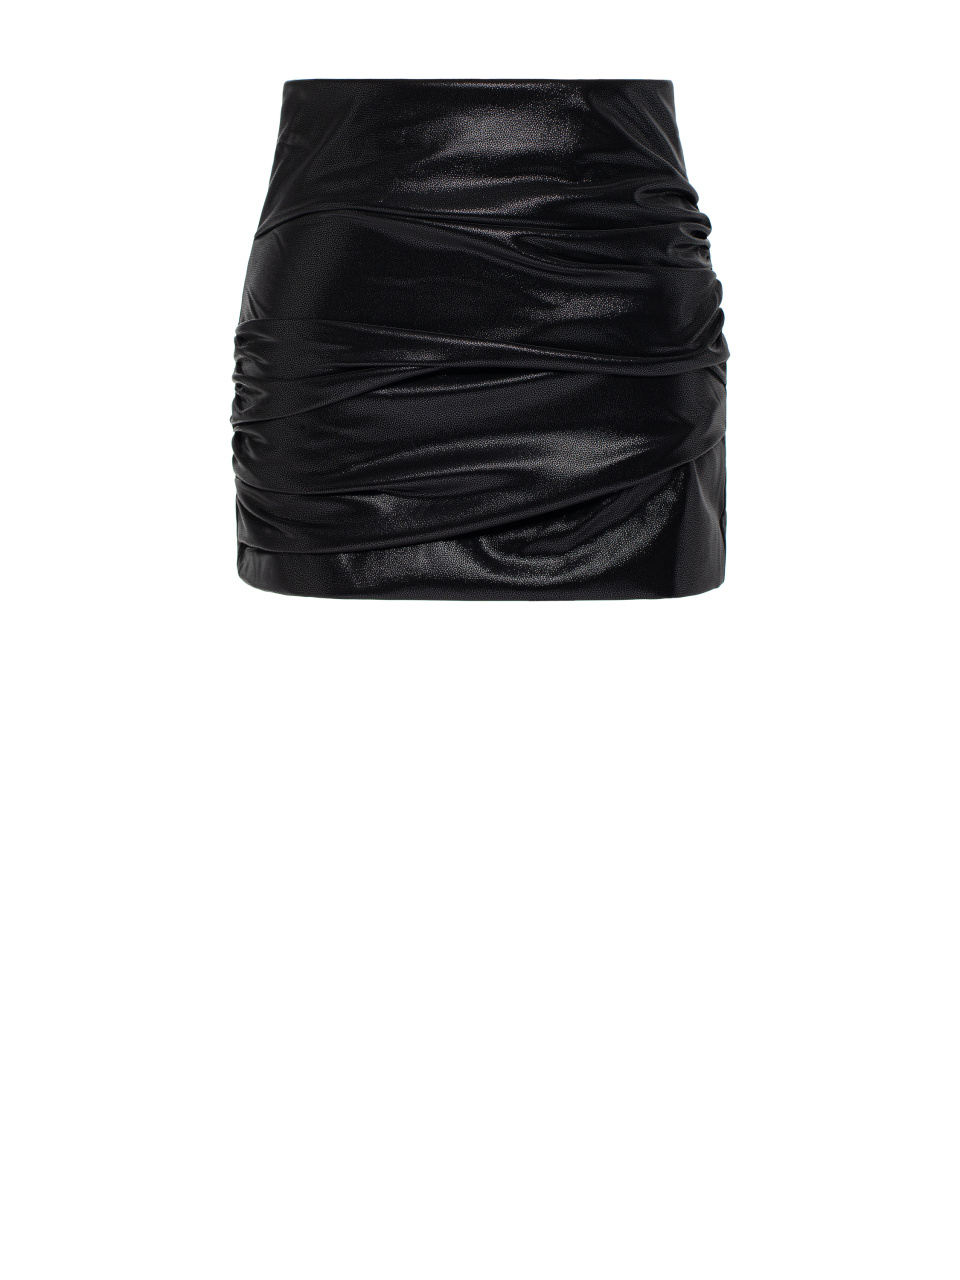 Черная мини-юбка из эко-кожи с драпировкой, 1